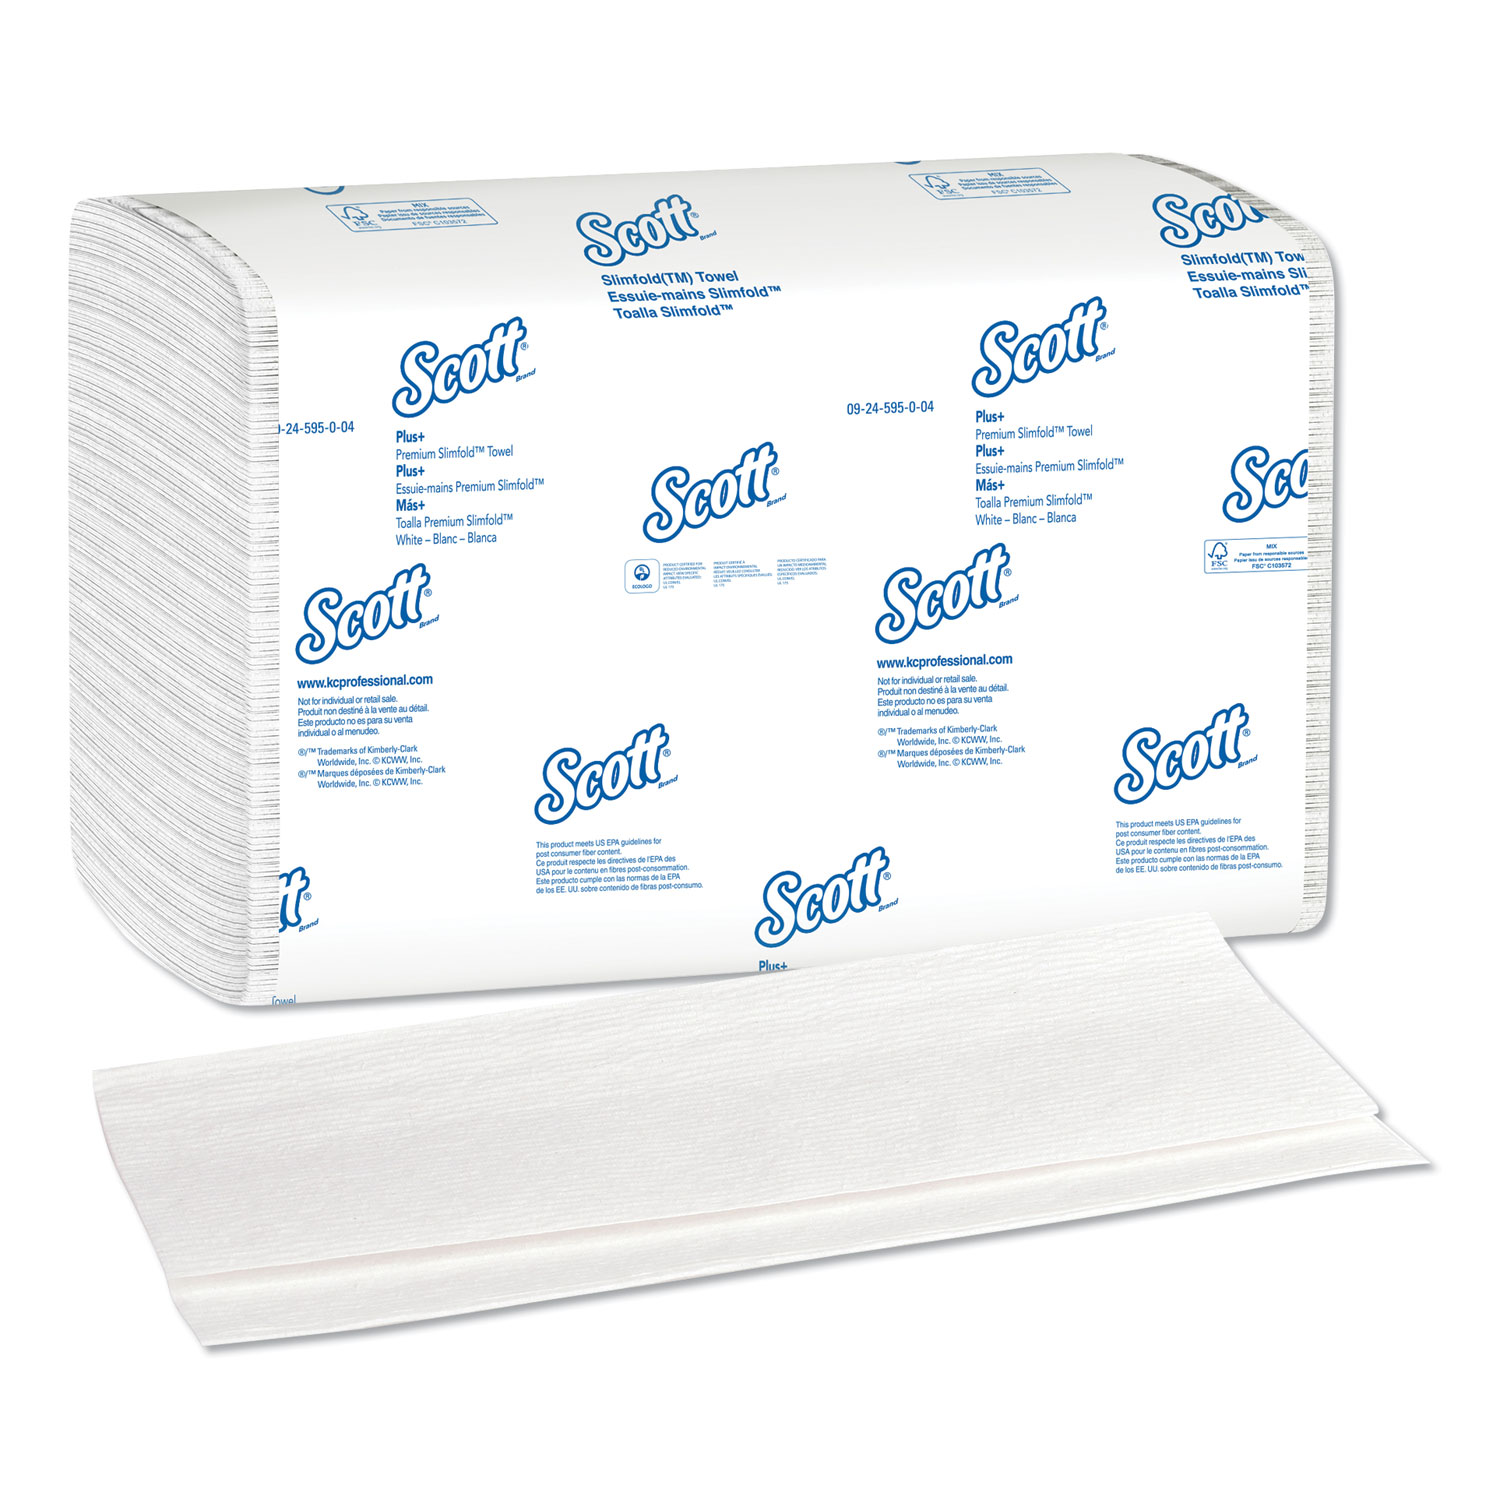 Scott Control Slimfold Towels - 7 1/2